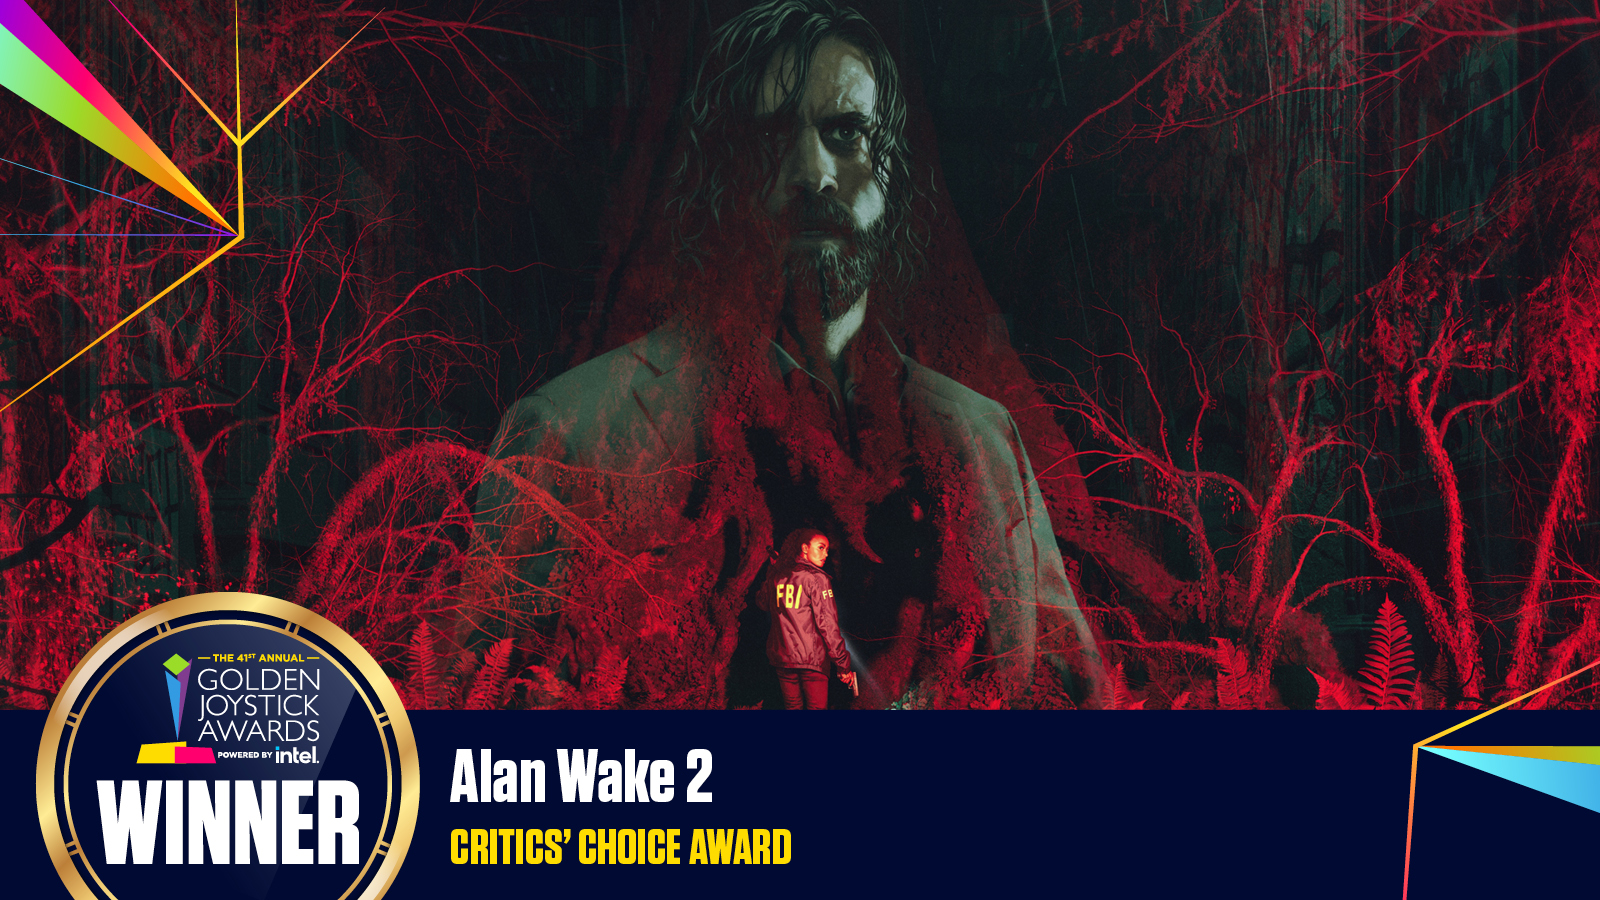 Alan Wake 2 wins three awards, Yle News